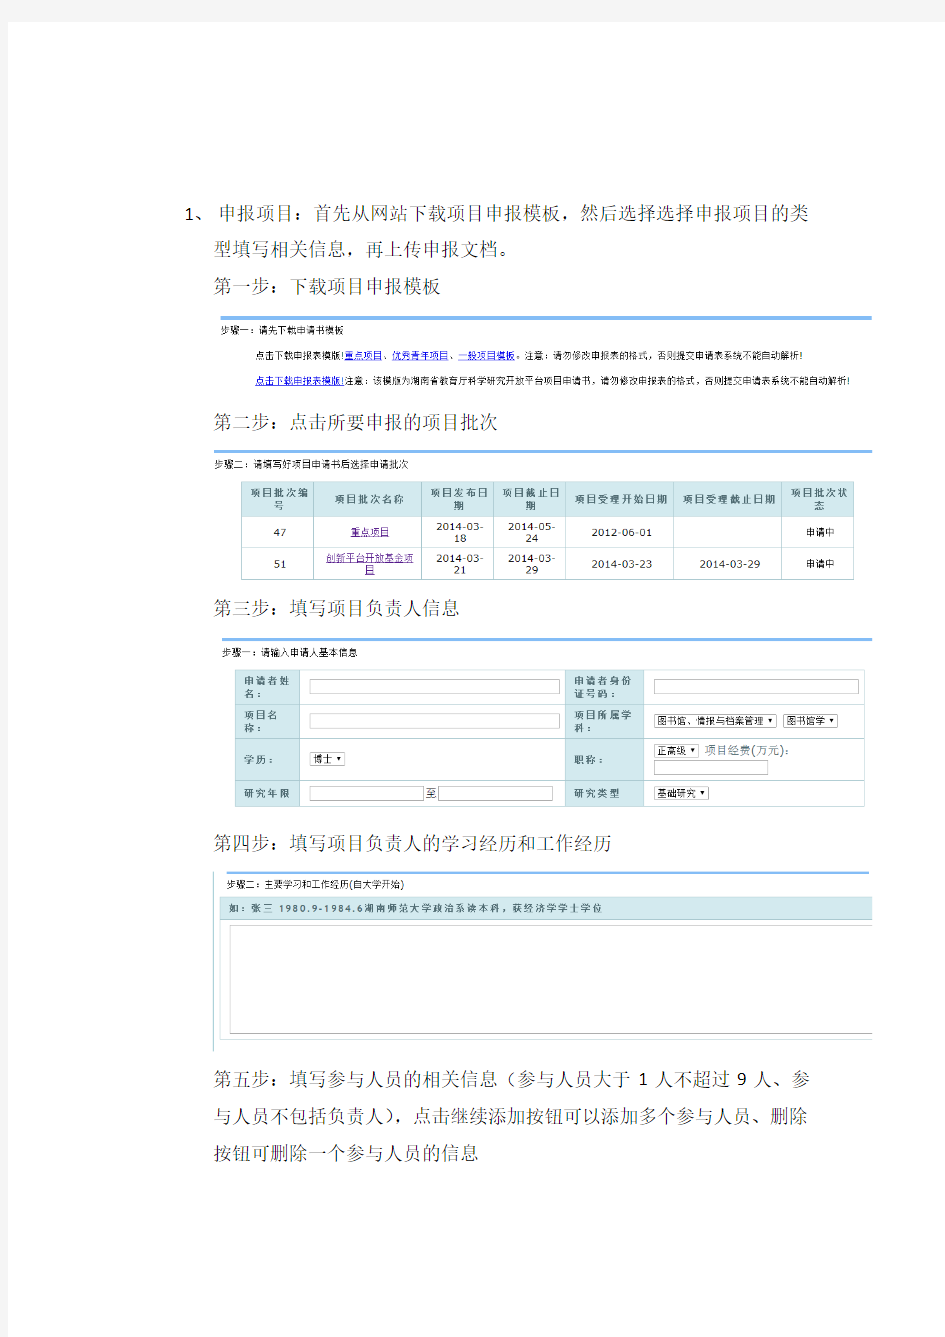 湖南省教育厅科研项目管理系统用户操作手册 -科研人员